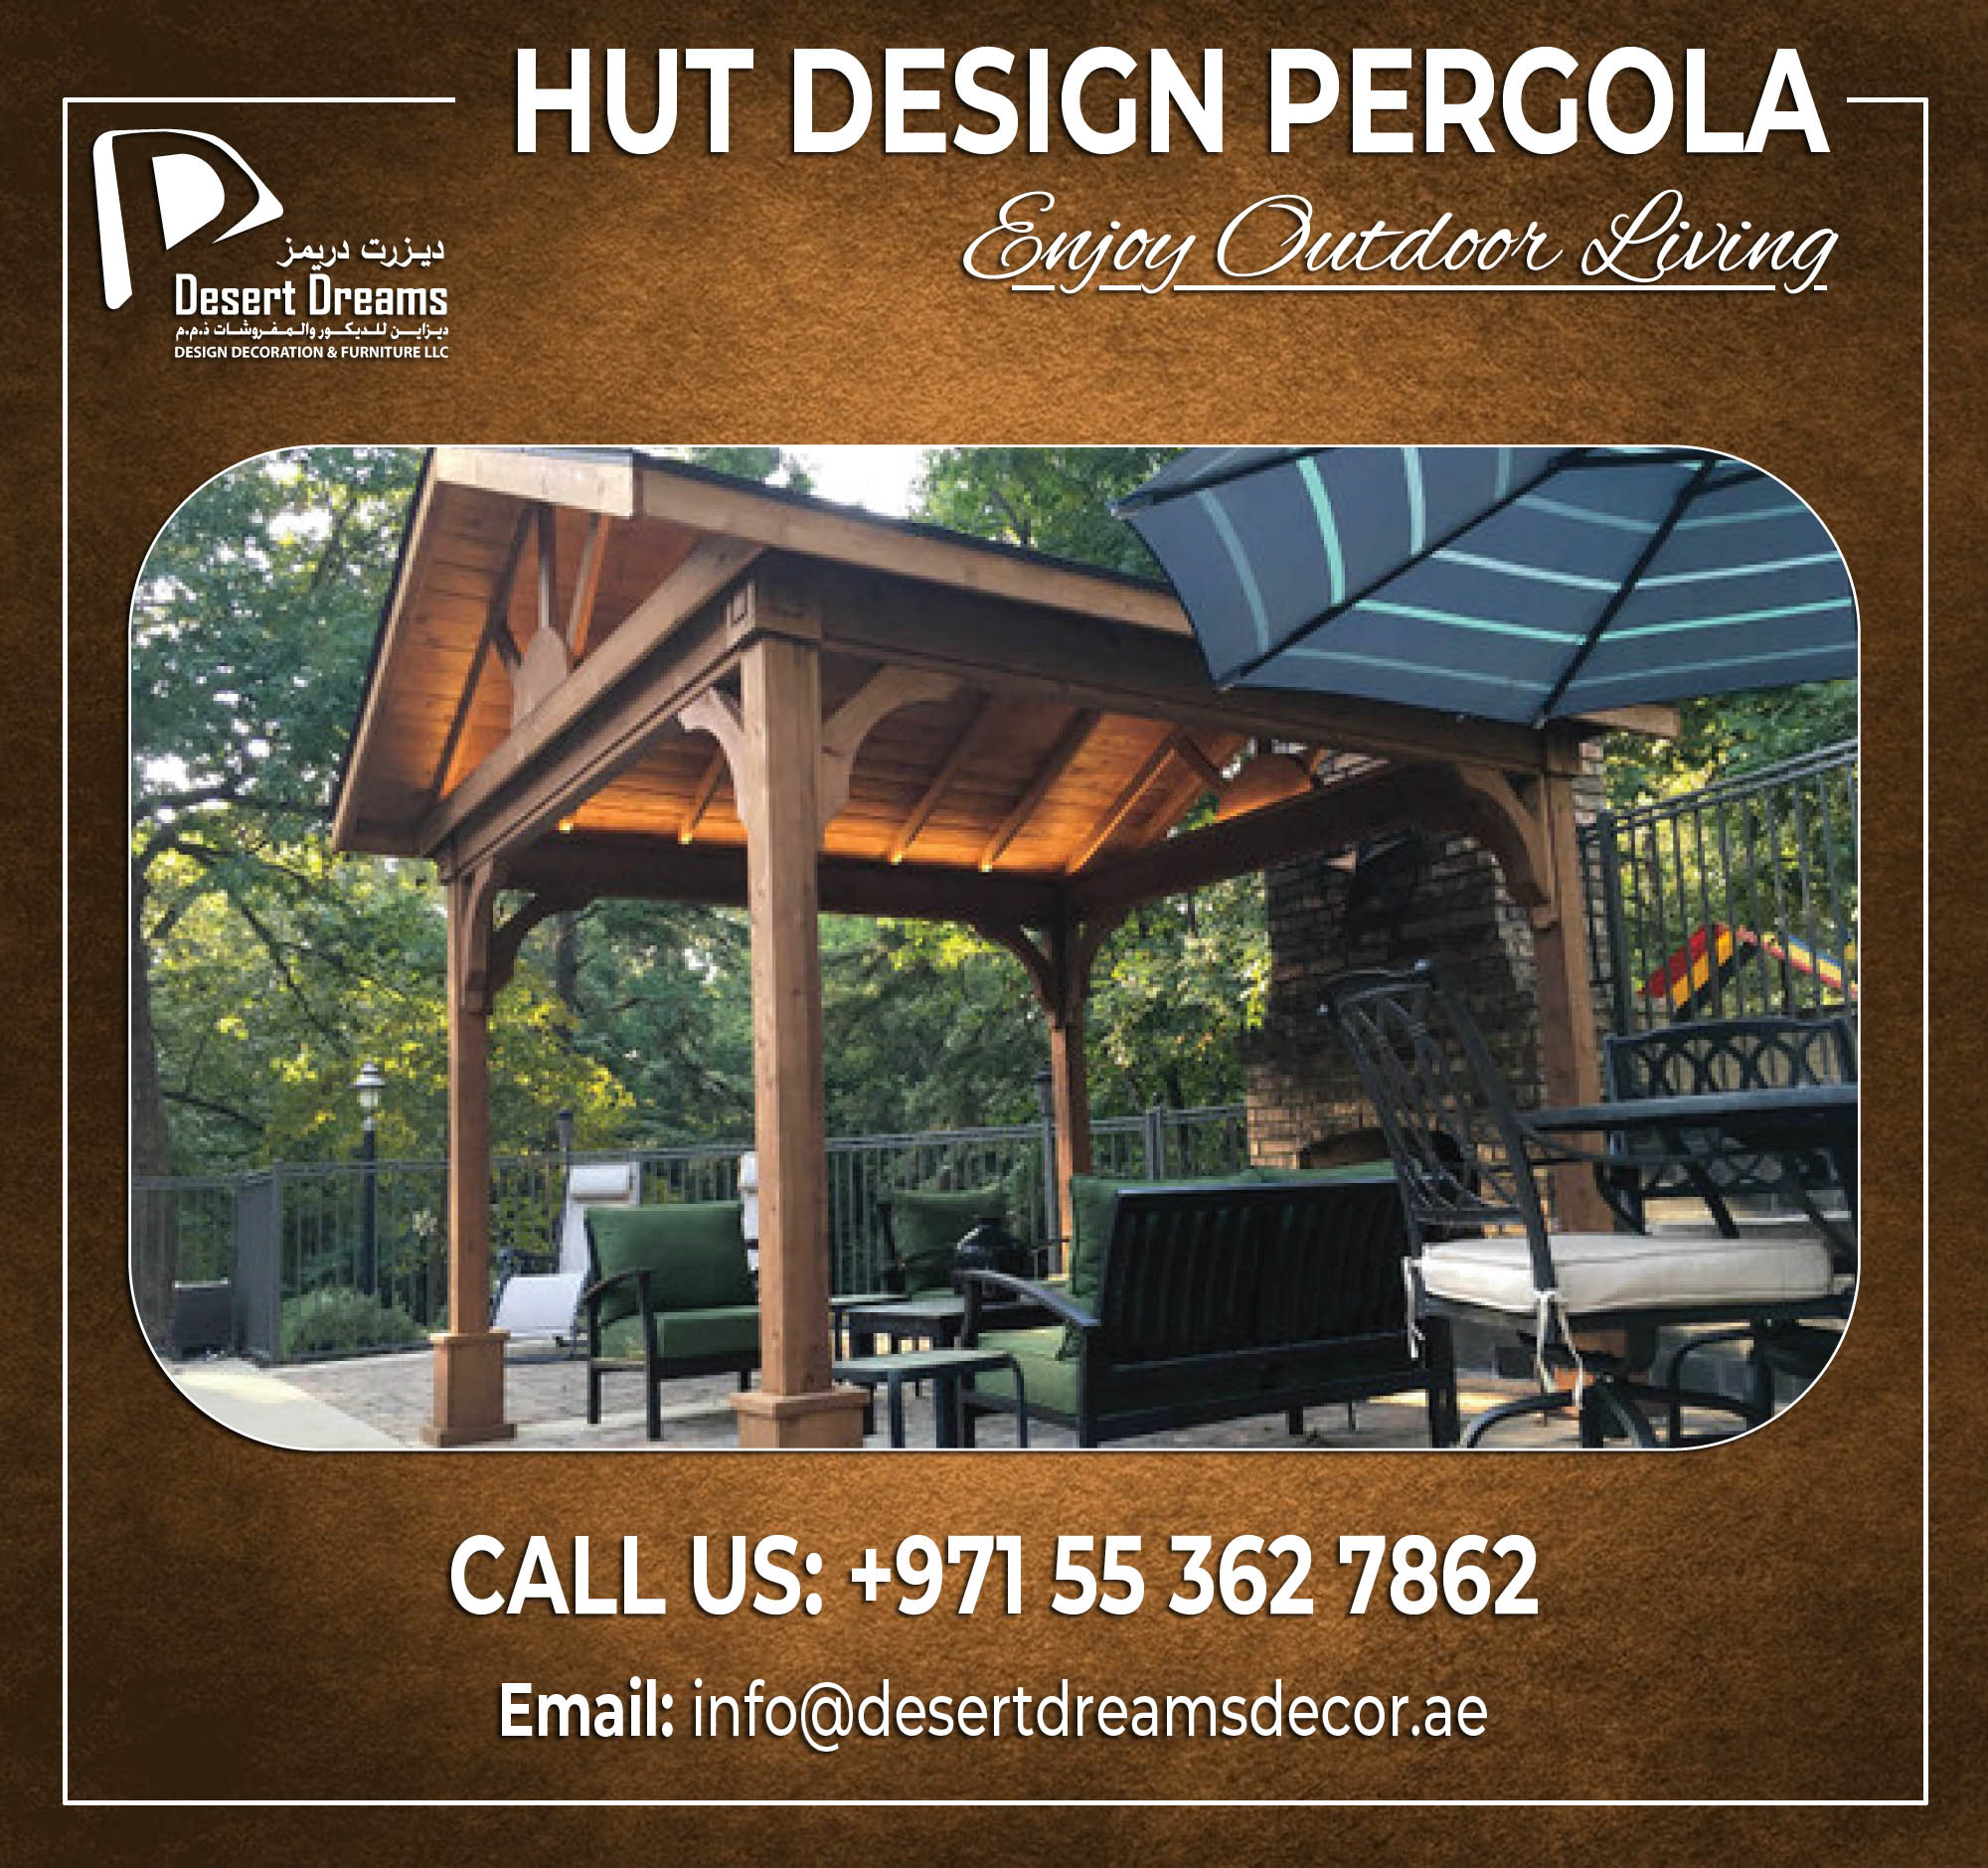 Hut Design Pergola in UAE.jpg